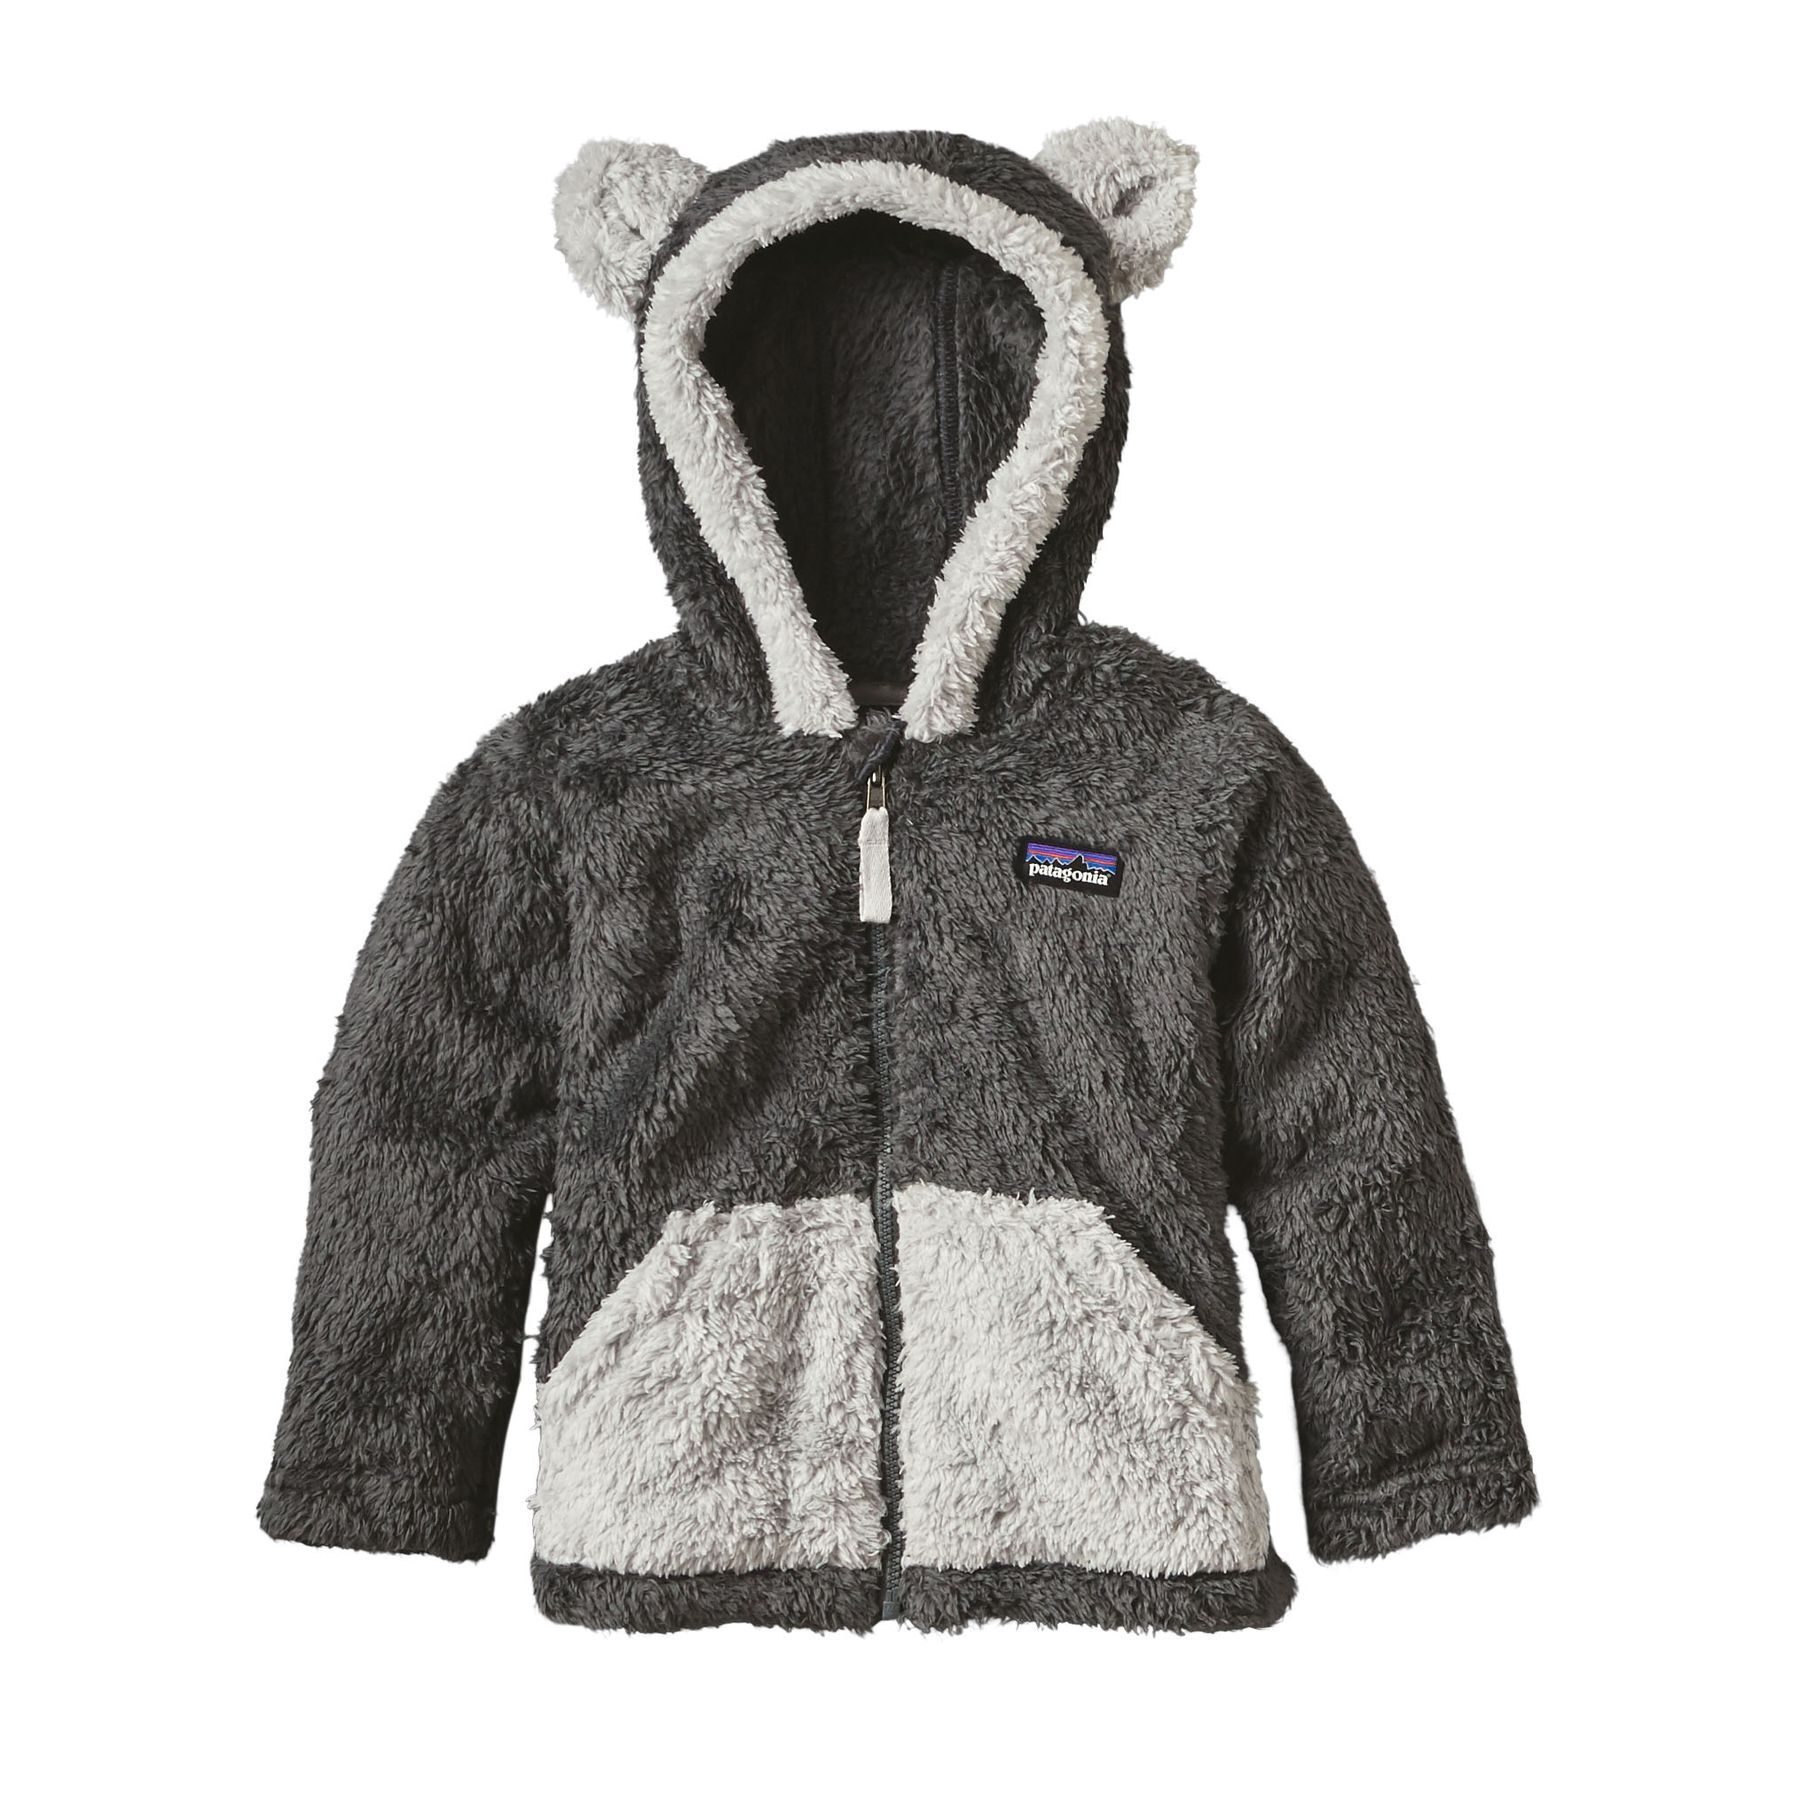 Patagonia - Baby Furry Friends Hoody - Fleece jacket - Kids